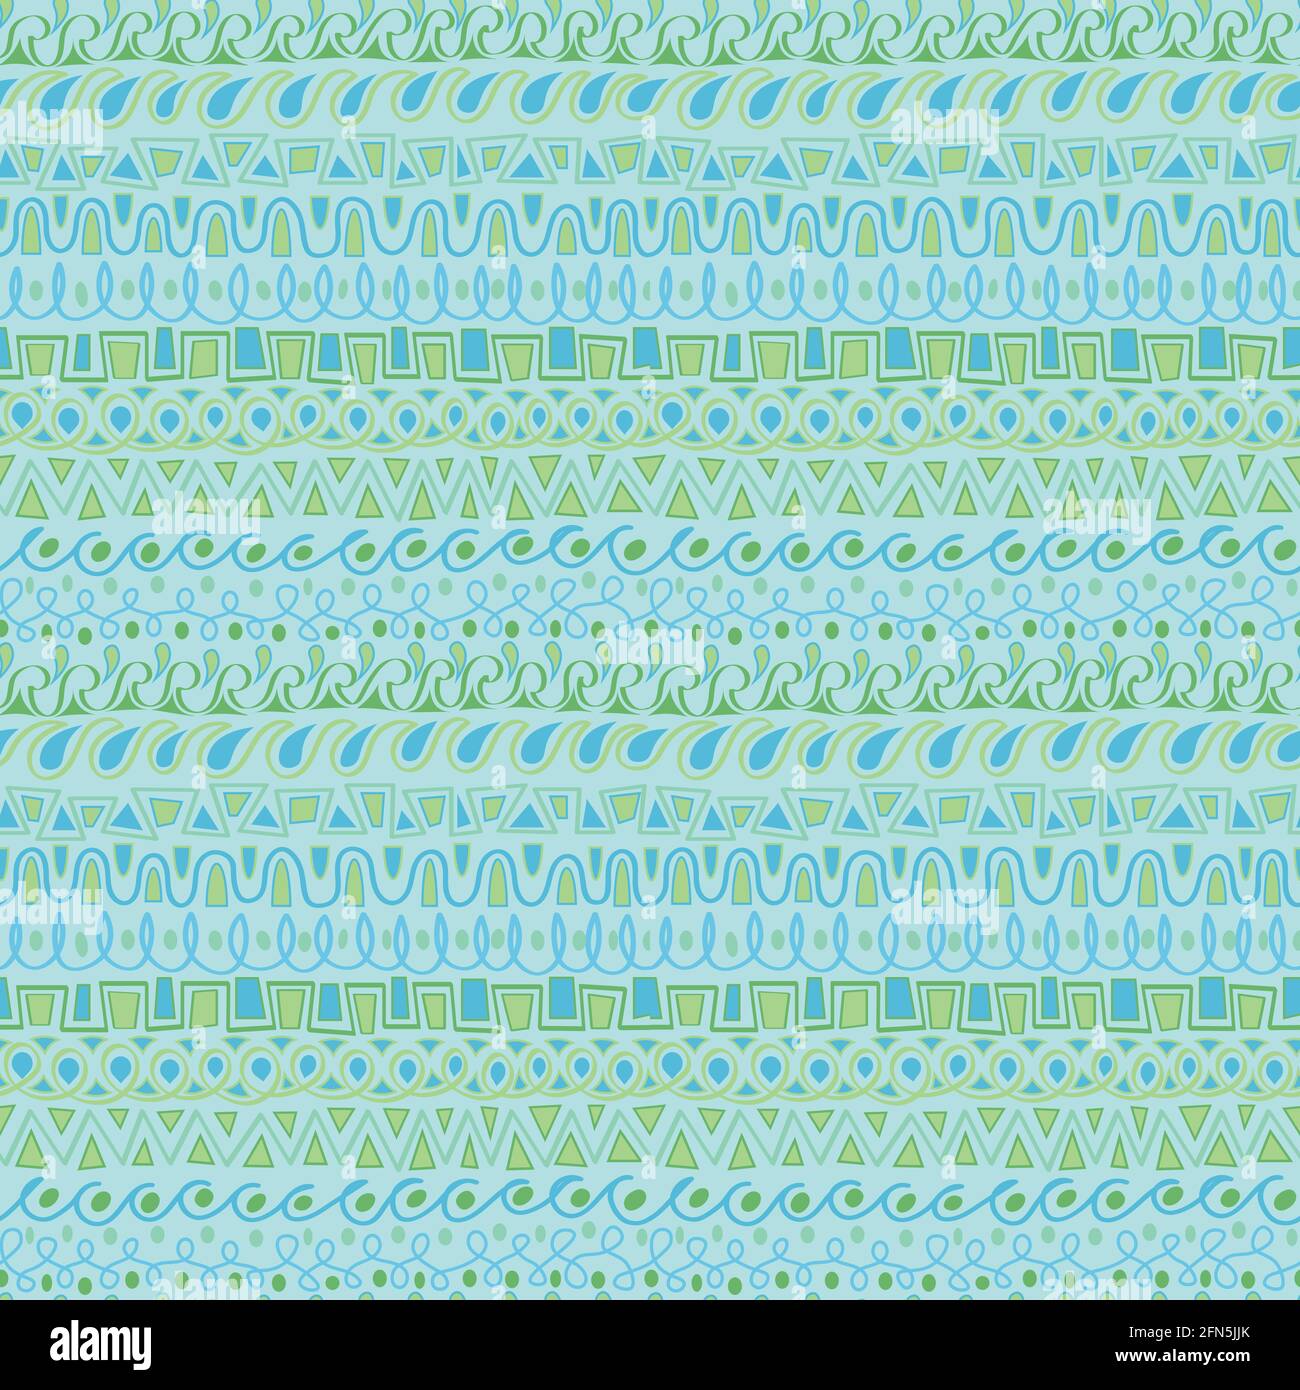 Nahtlos wiederholtes Muster. Naive, handgezeichnete Umrandungen in hellblau und grün. Komplizierte und detaillierte, aber einfache Formen/Ränder von Wellen, Quadraten und Stock Vektor